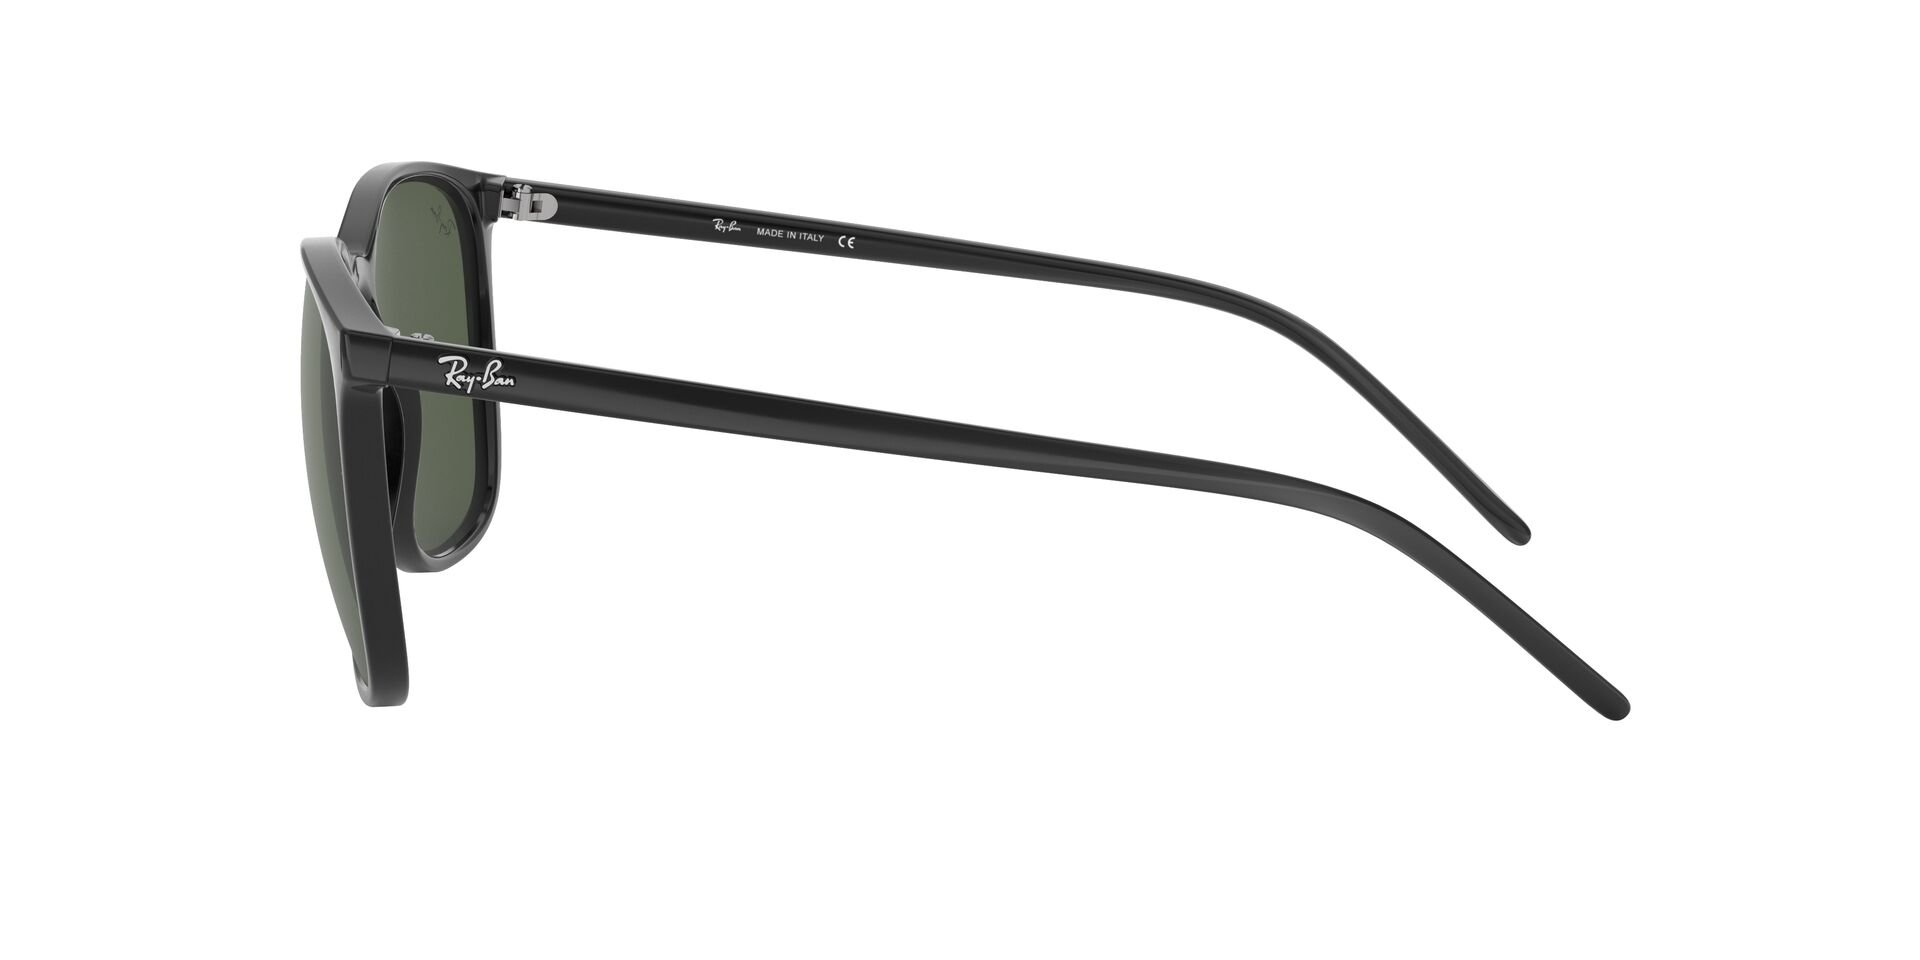 Das Bild zeigt die Sonnenbrille RB4387 601 von der Marke Ray-Ban in schwarz